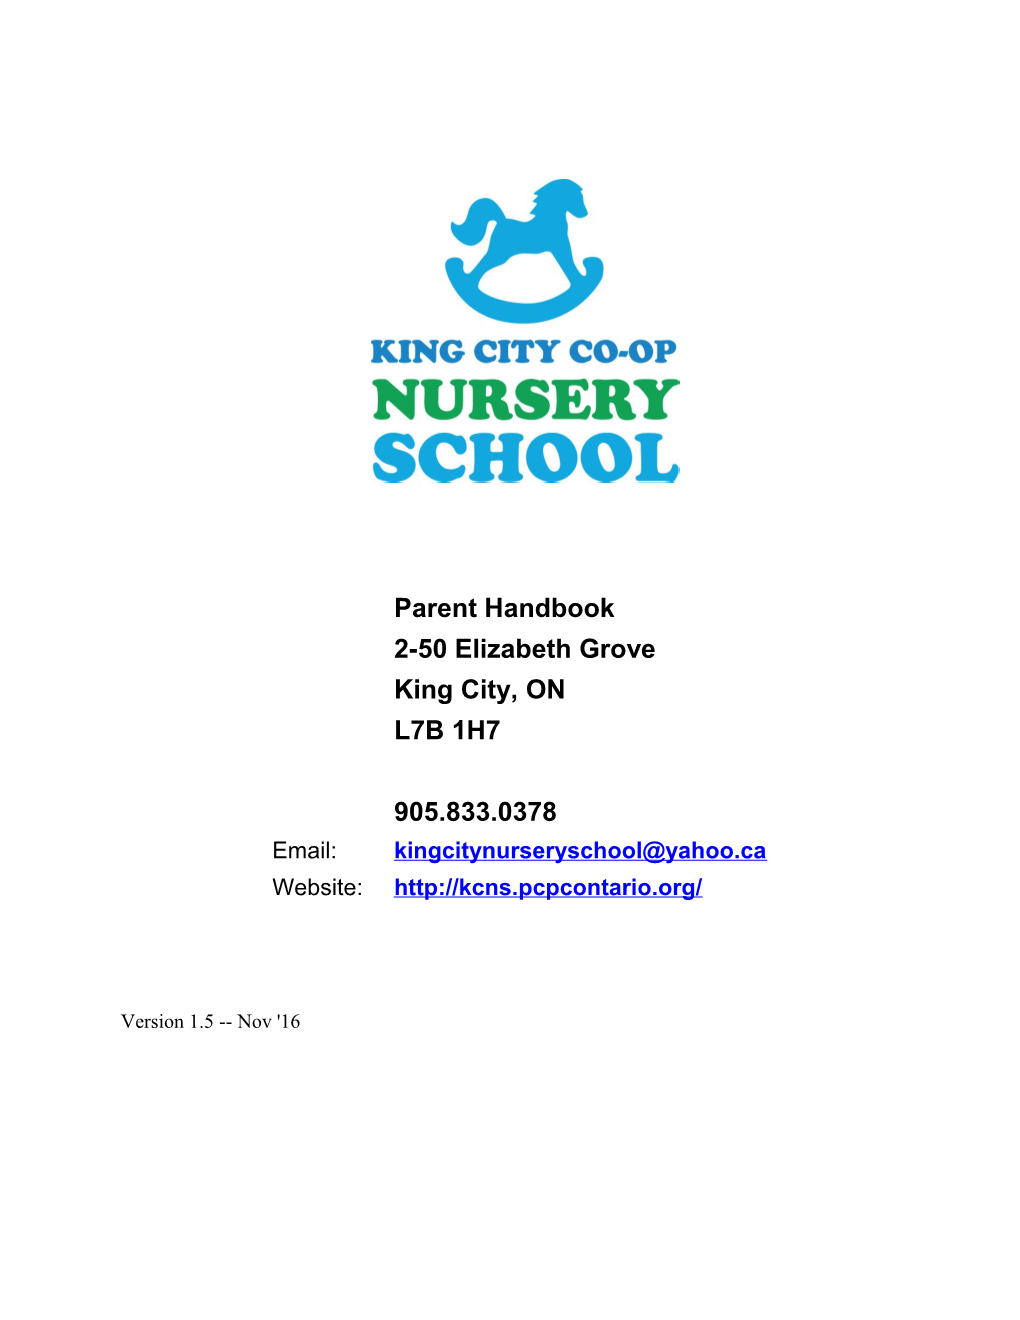 King City Co-Op Nursery School Parent Handbook